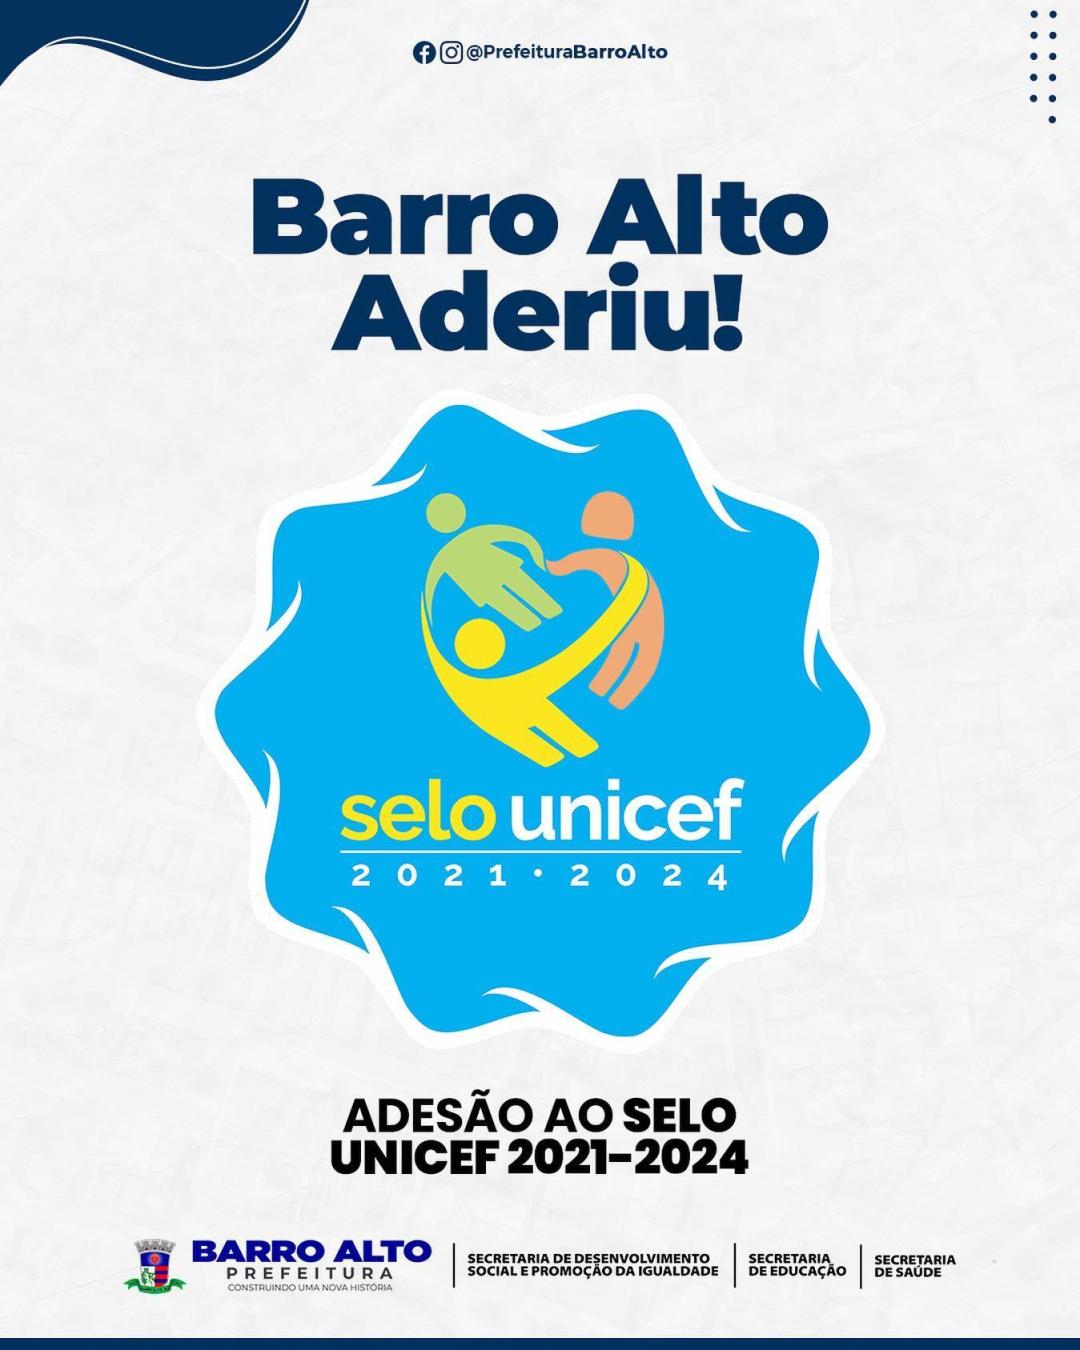 Barro Alto mais uma vez adere ao selo Unicef, pensando em um futuro de mais dignidade para os nossos jovens. 